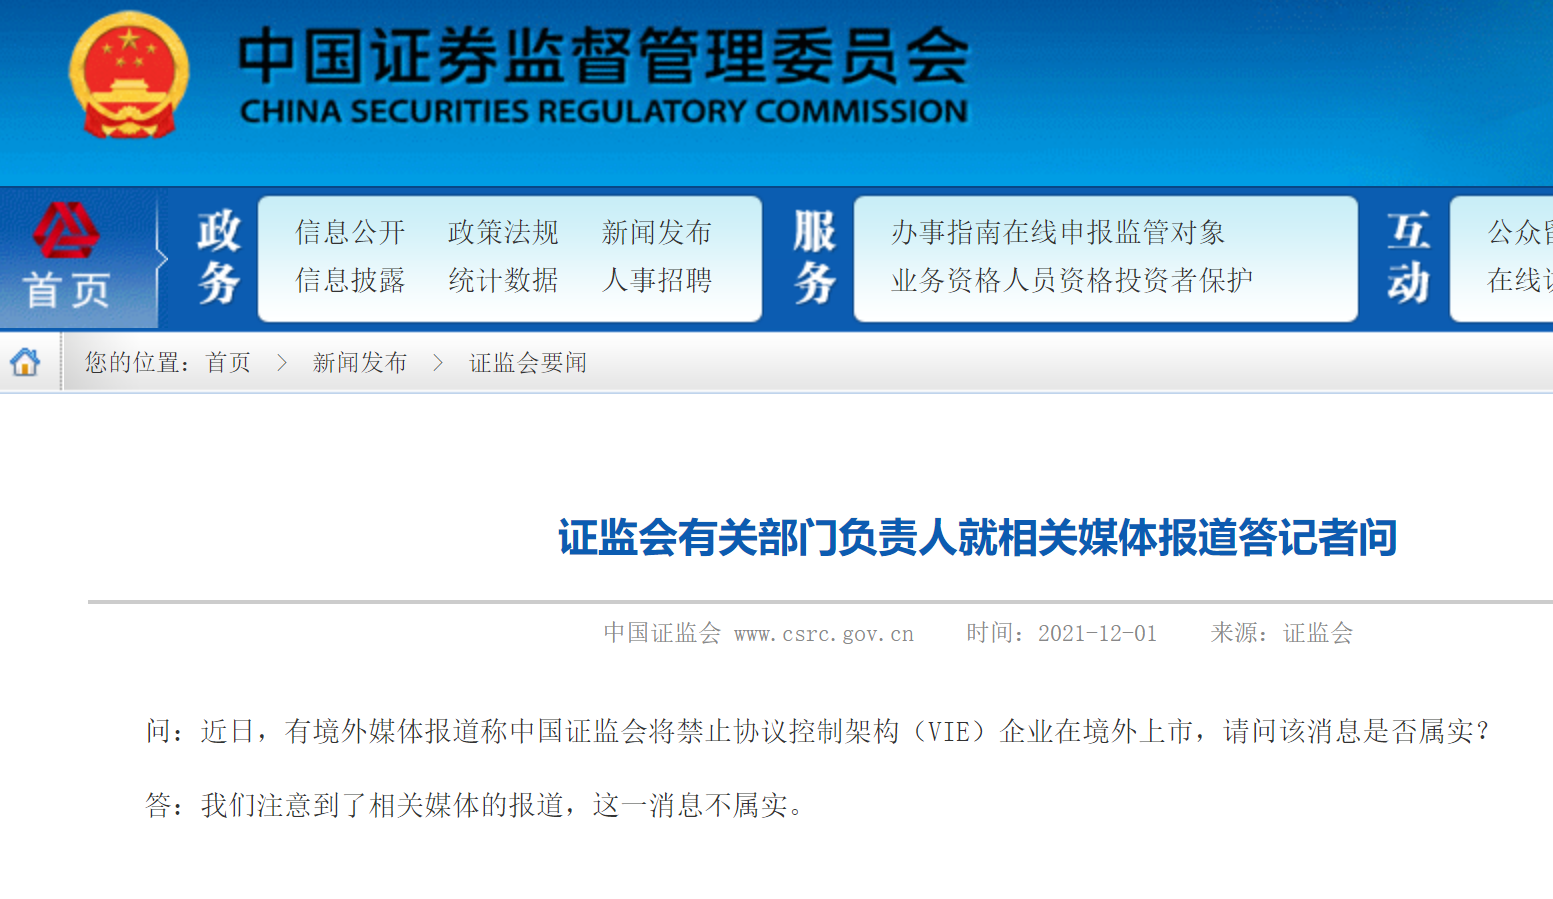 证监会就北京证券交易所有关基础制度向全社会公开征求意见 - 国内动态 - 华声新闻 - 华声在线